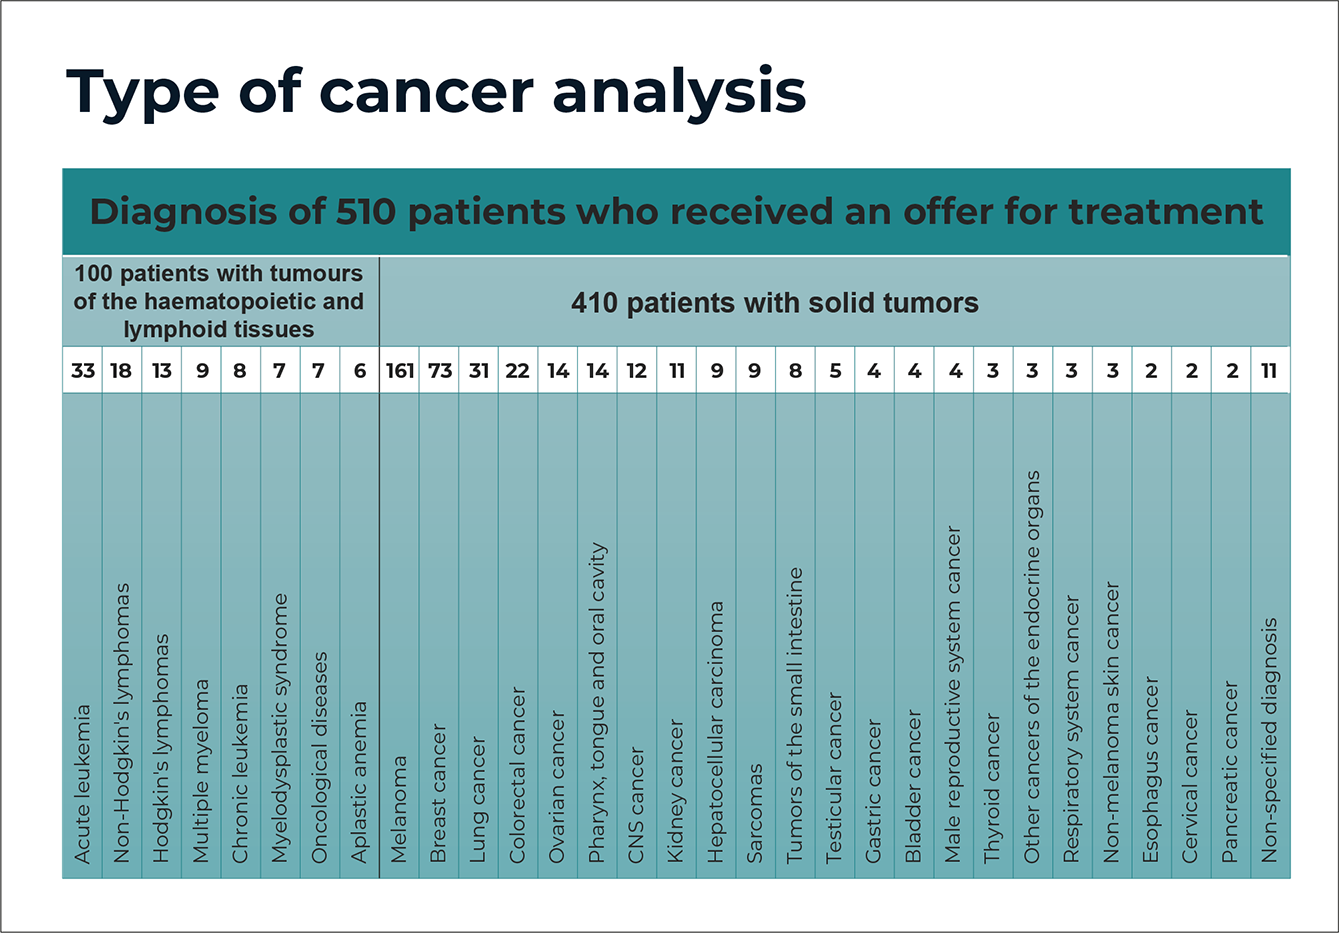 FIGUUR 3. Overzicht van de verdeling van diagnoses van een groep van 510 patiënten die een aanbod voor overname van hun behandeling ontvingen (gegevens zijn per juli 2023).